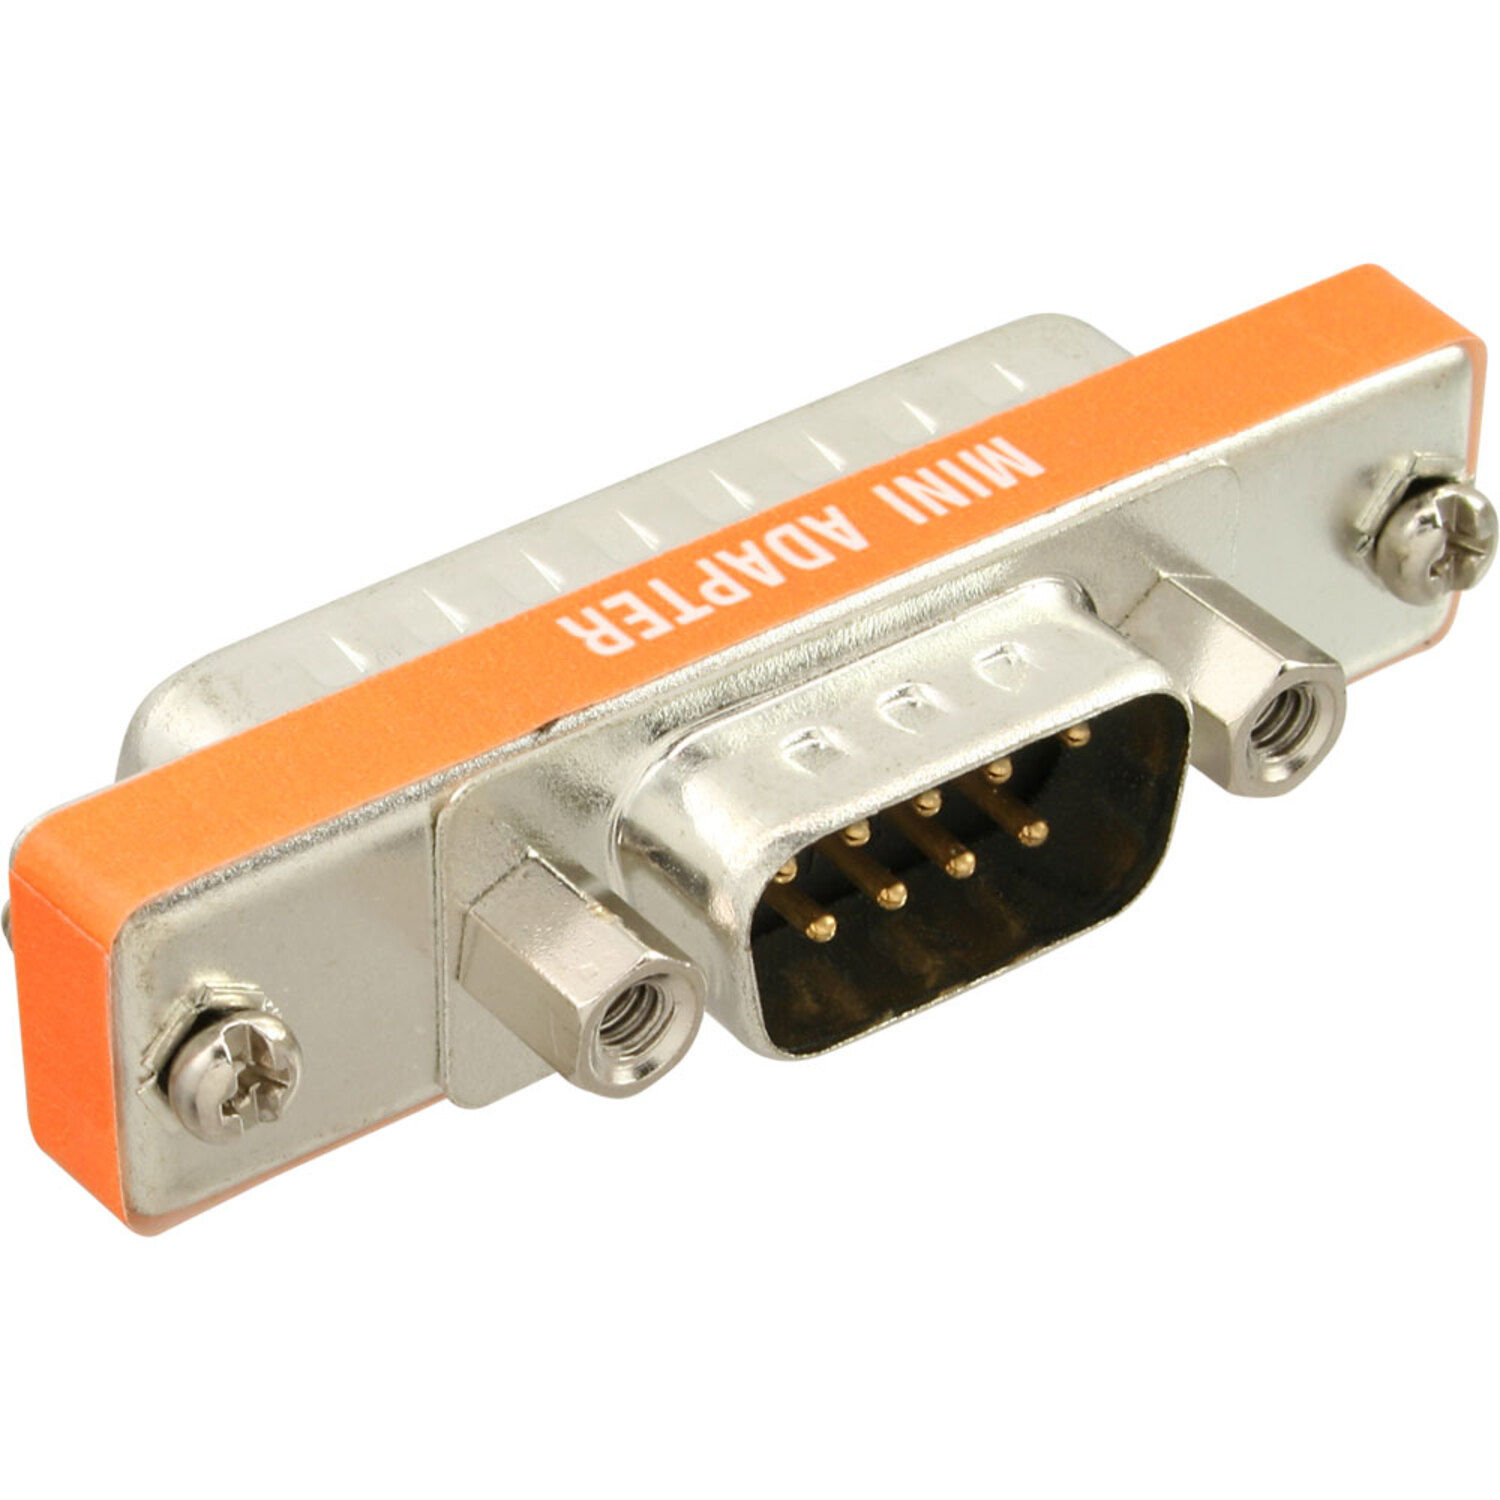 mehrfarbig Changer / / INLINE (9/15/25polig/RJ45), an AT-Adapter, Sub D D Stecker Gender kurz InLine® Datenadapter 25pol Stecker, 9pol Sub